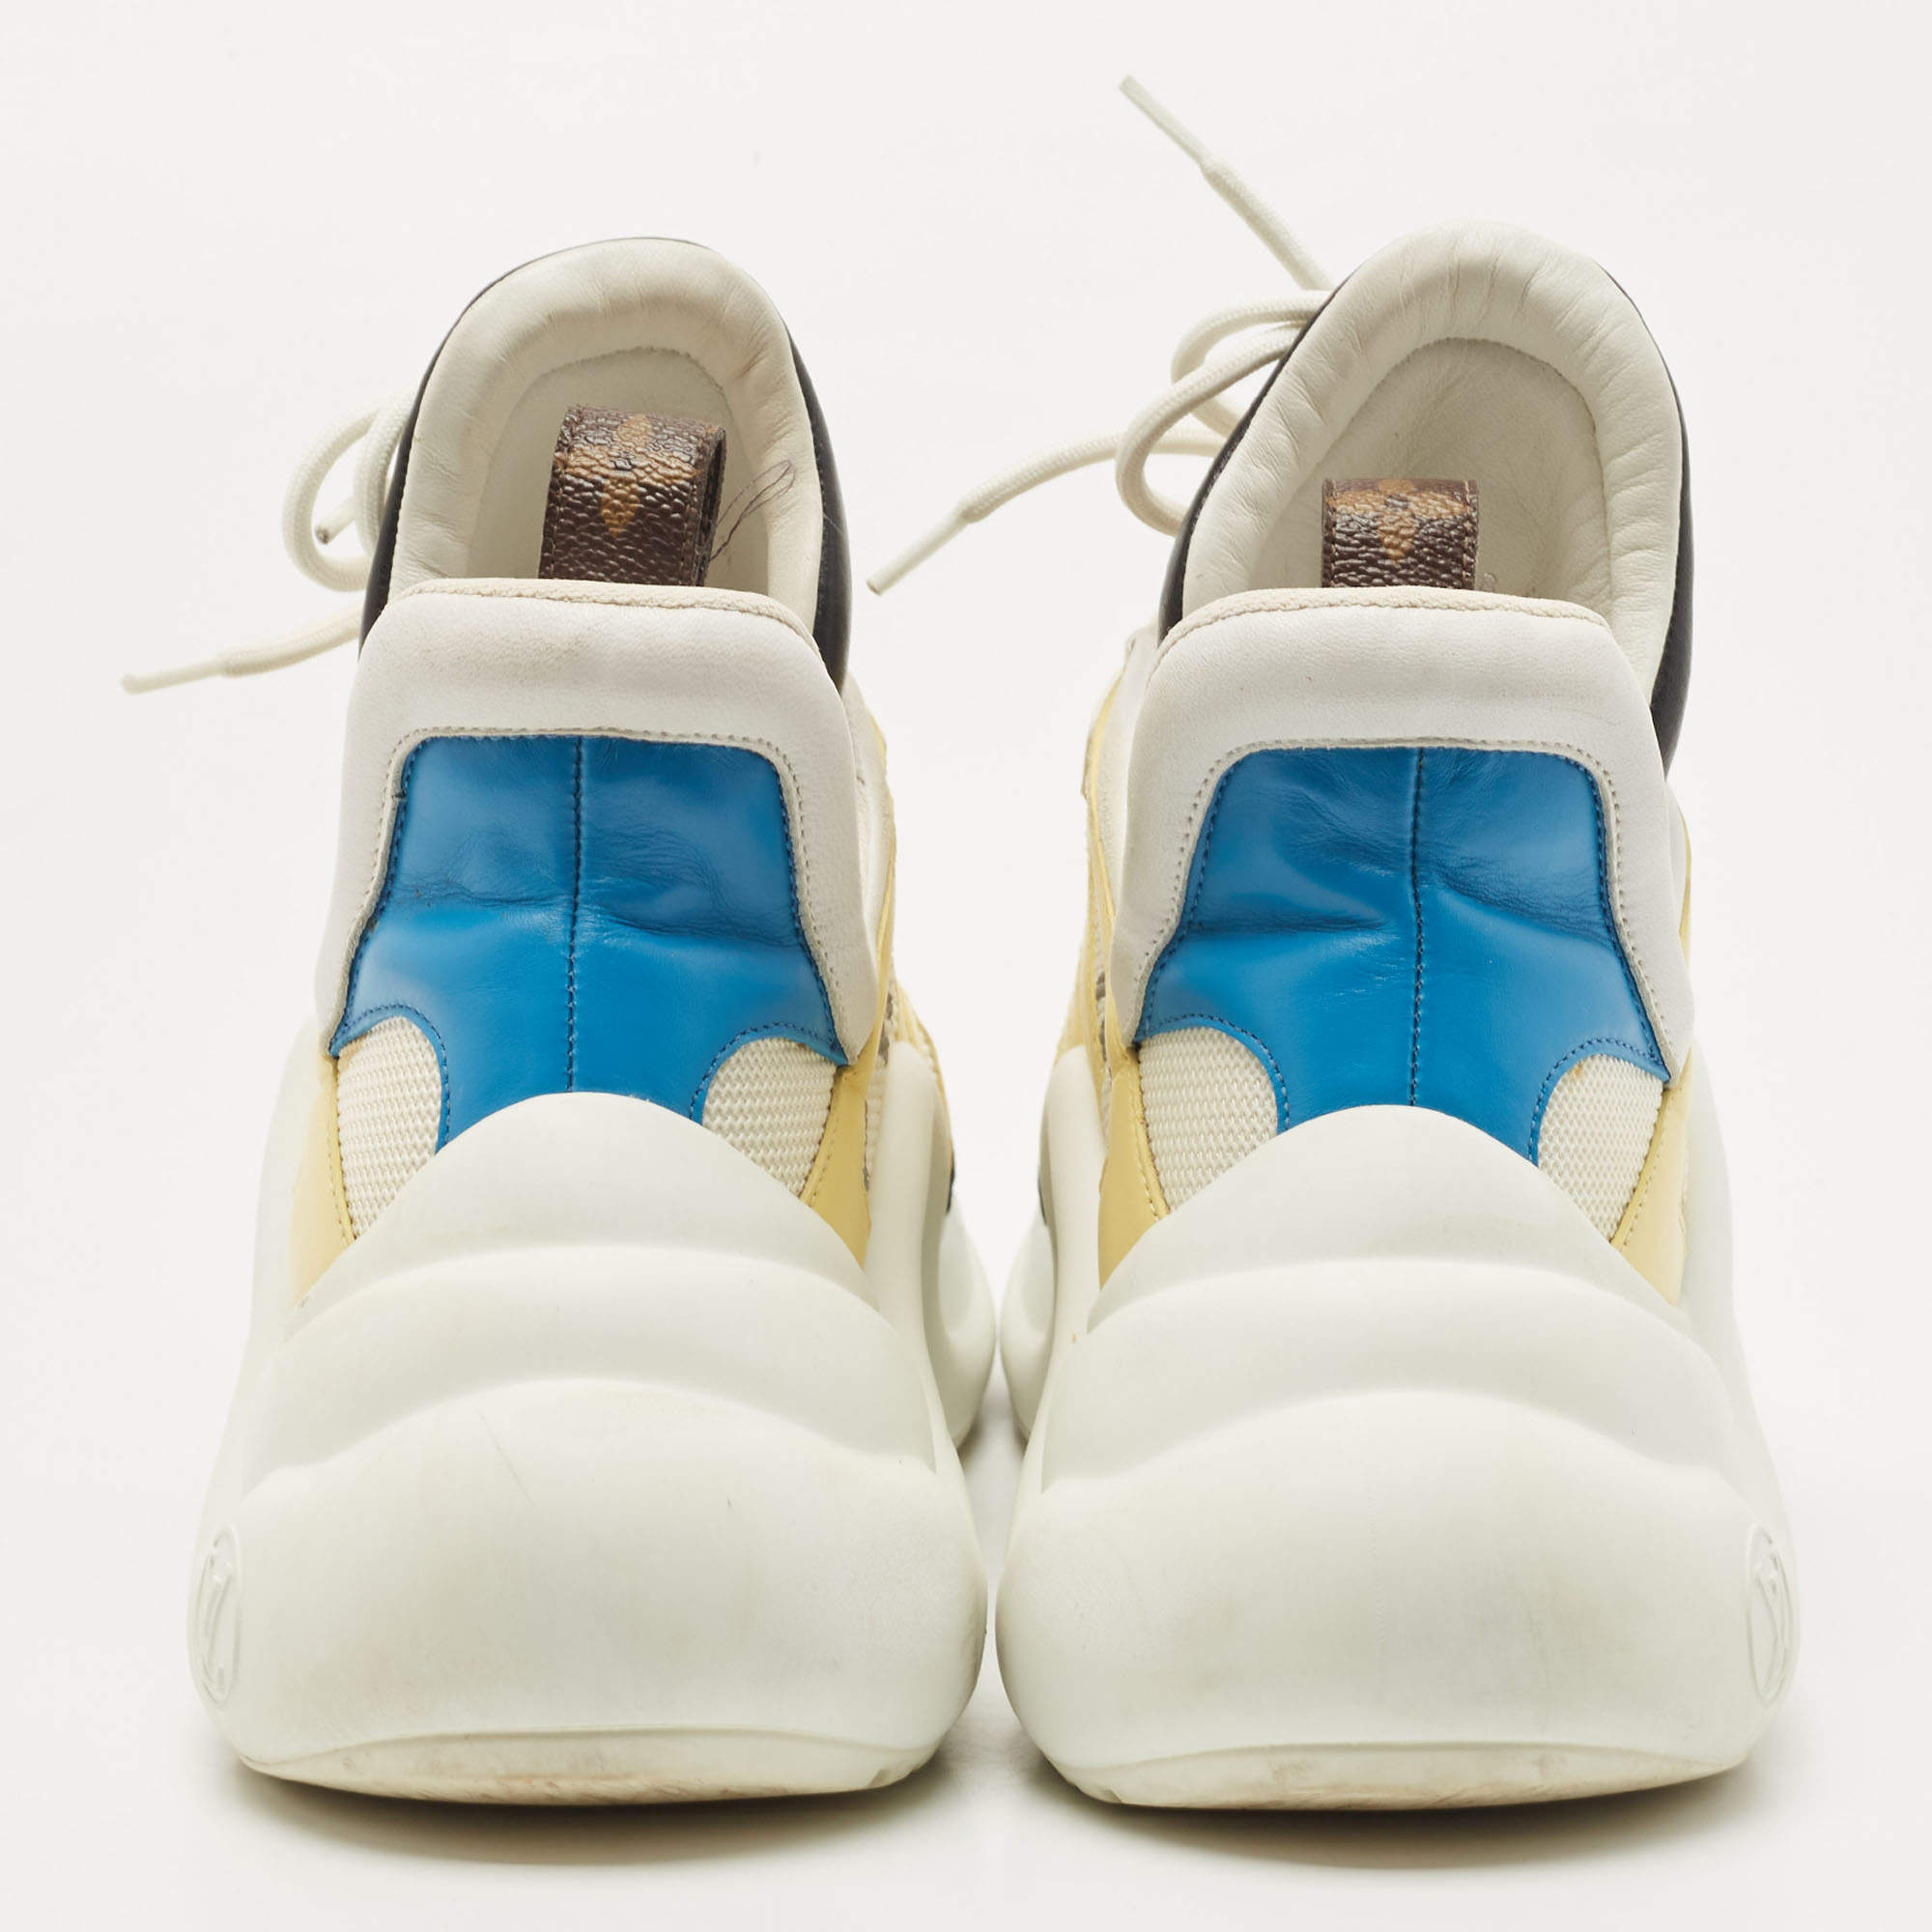 Louis Vuitton - LV Archlight Sneakers Trainers - Bleu Gris - Women - Size: 41.0 - Luxury